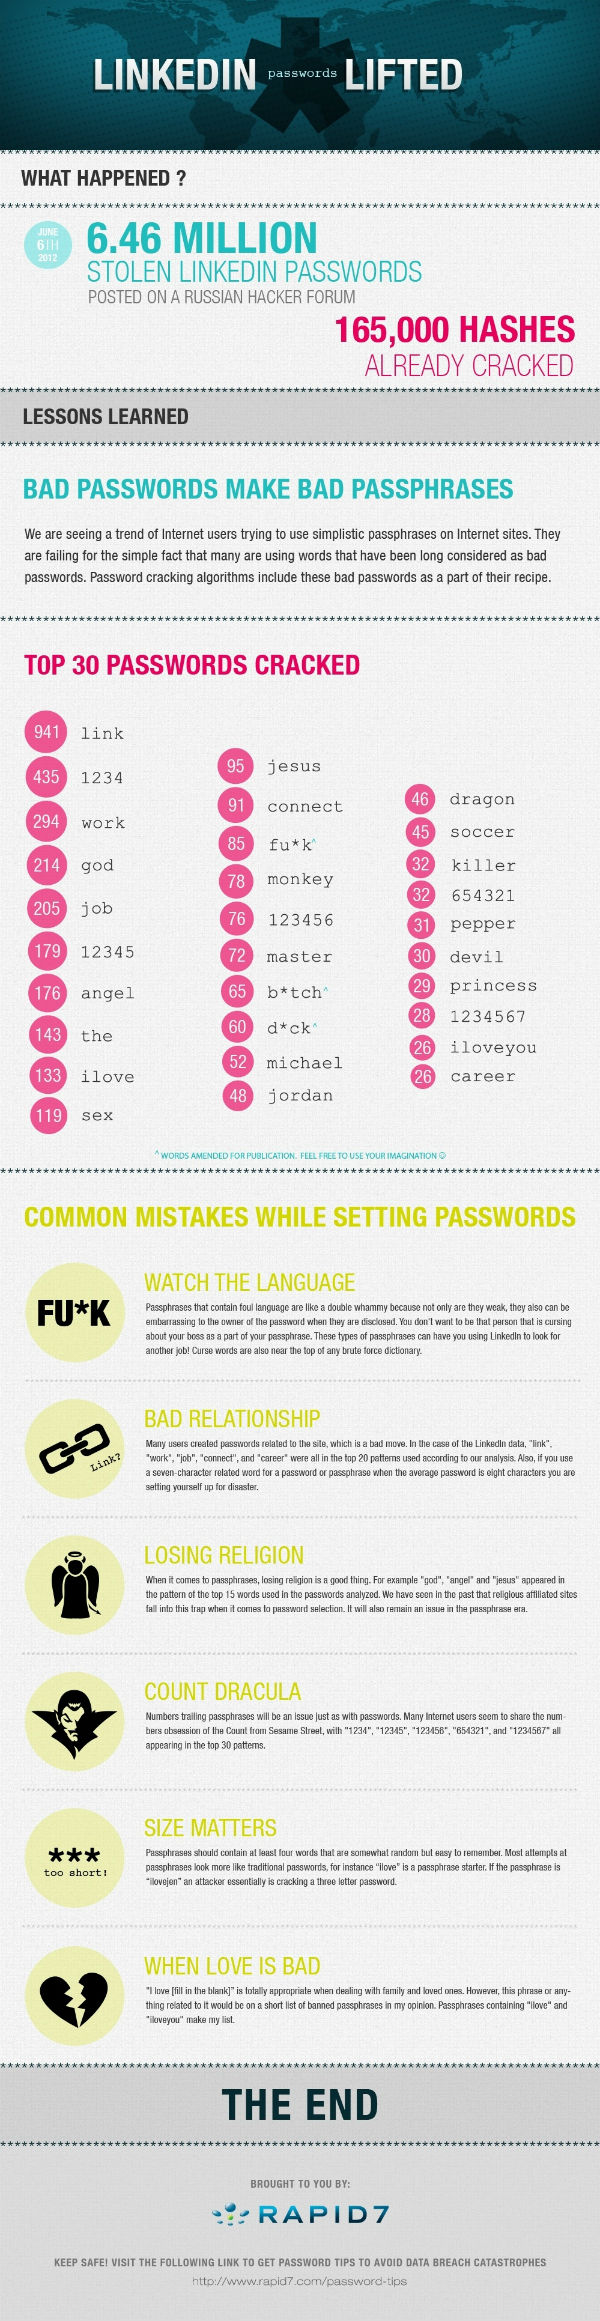 30 наиболее популярных паролей, украденных с LinkedIn